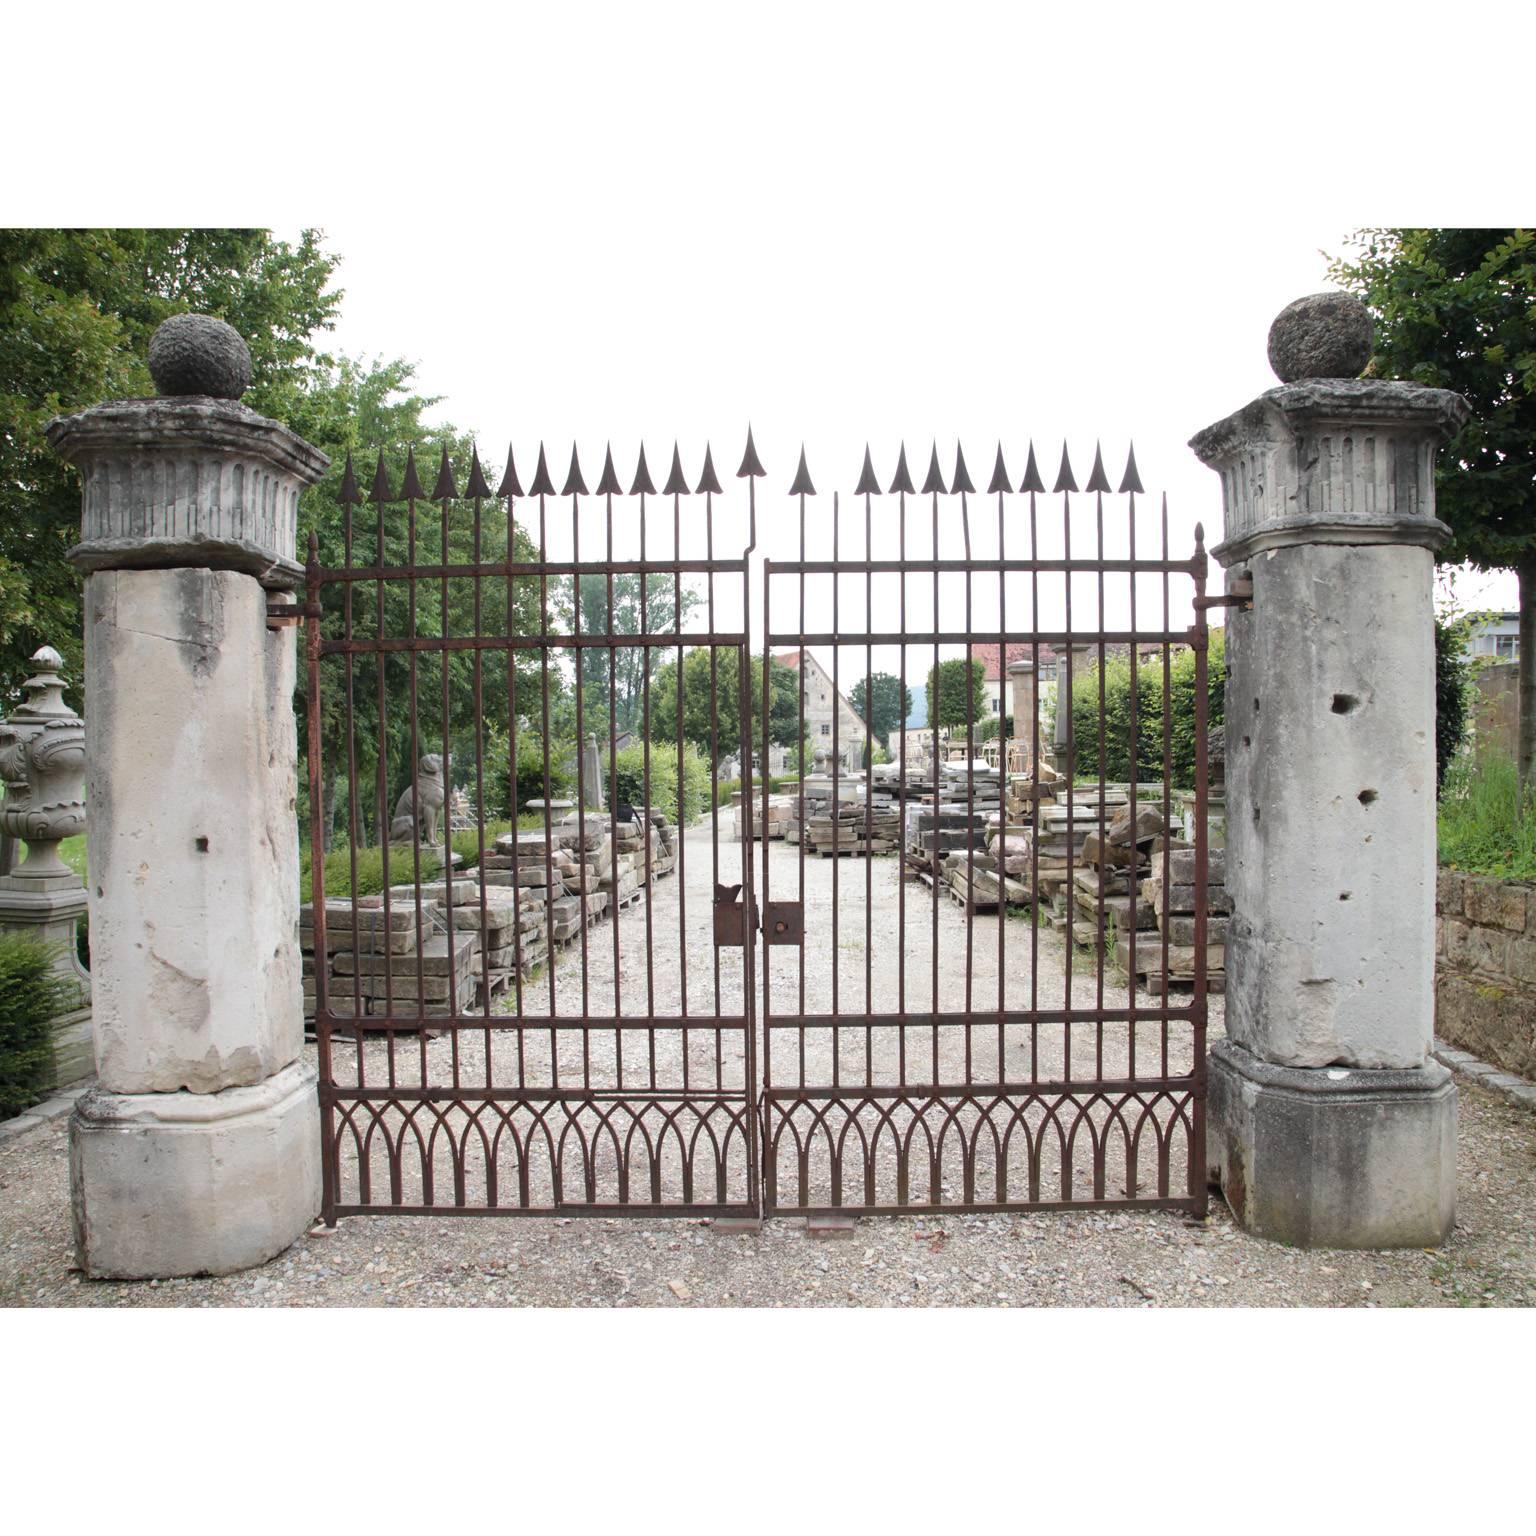 19 centur arched gate